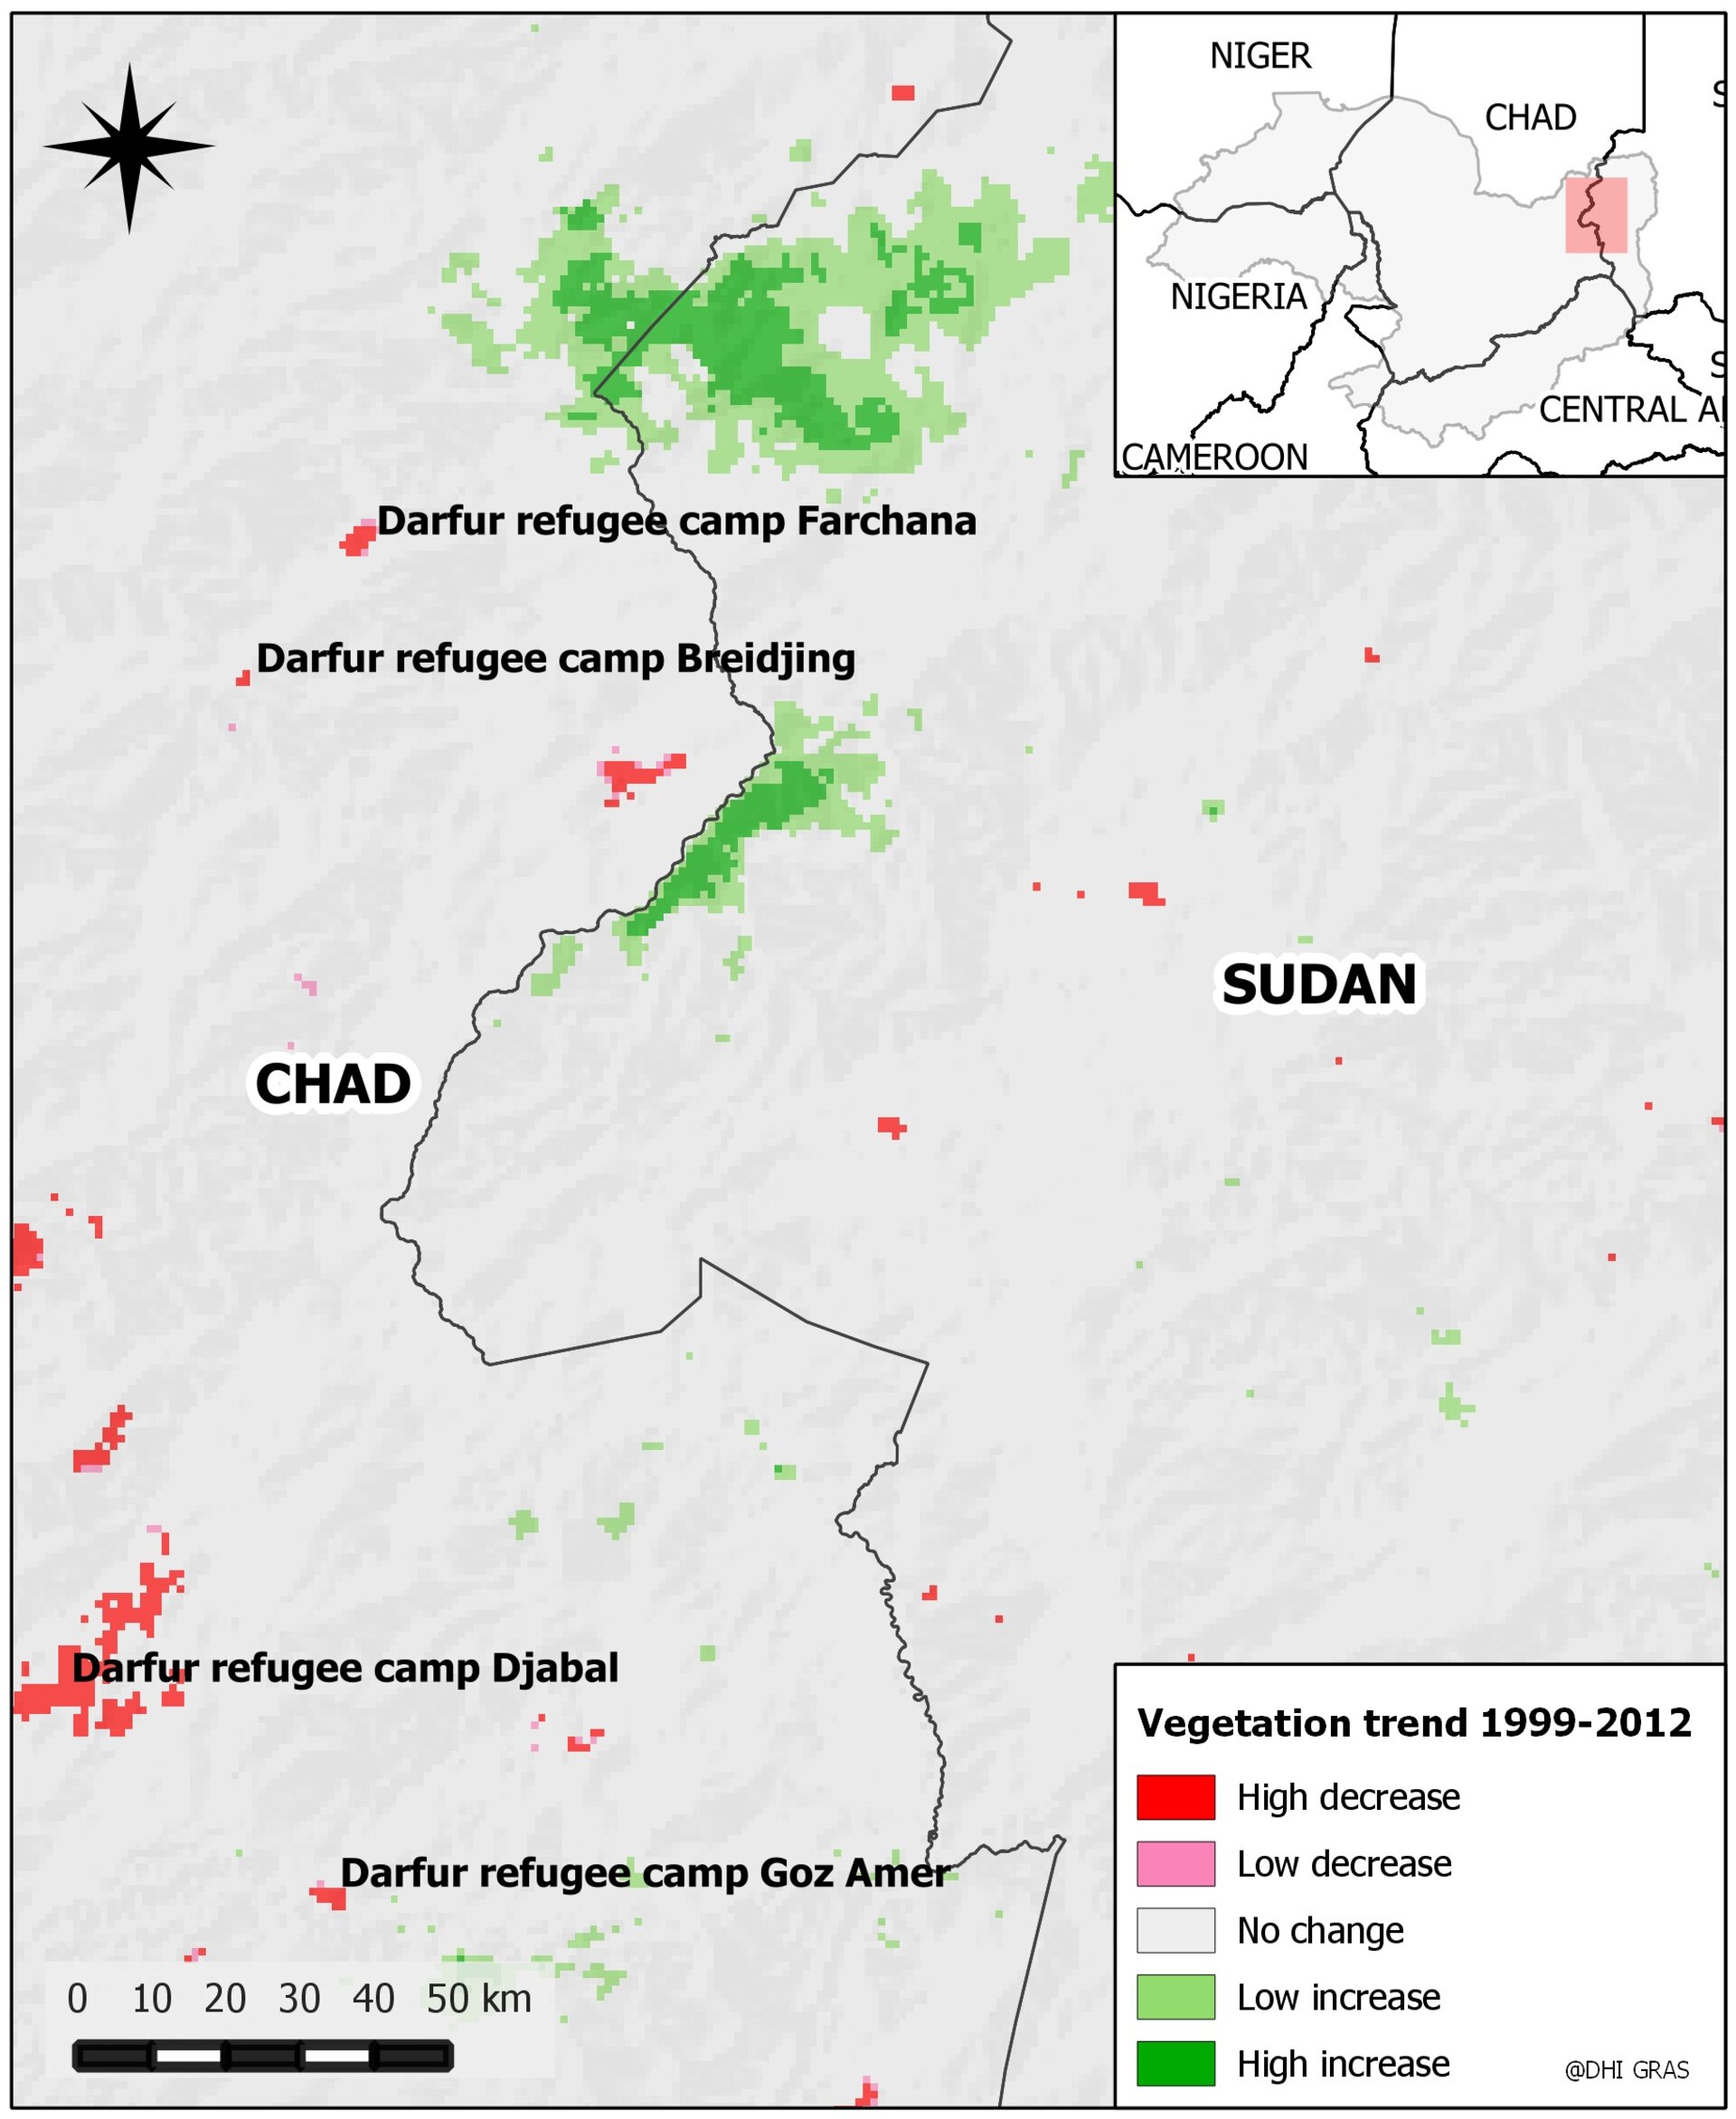 Land degradation in the Darfur region